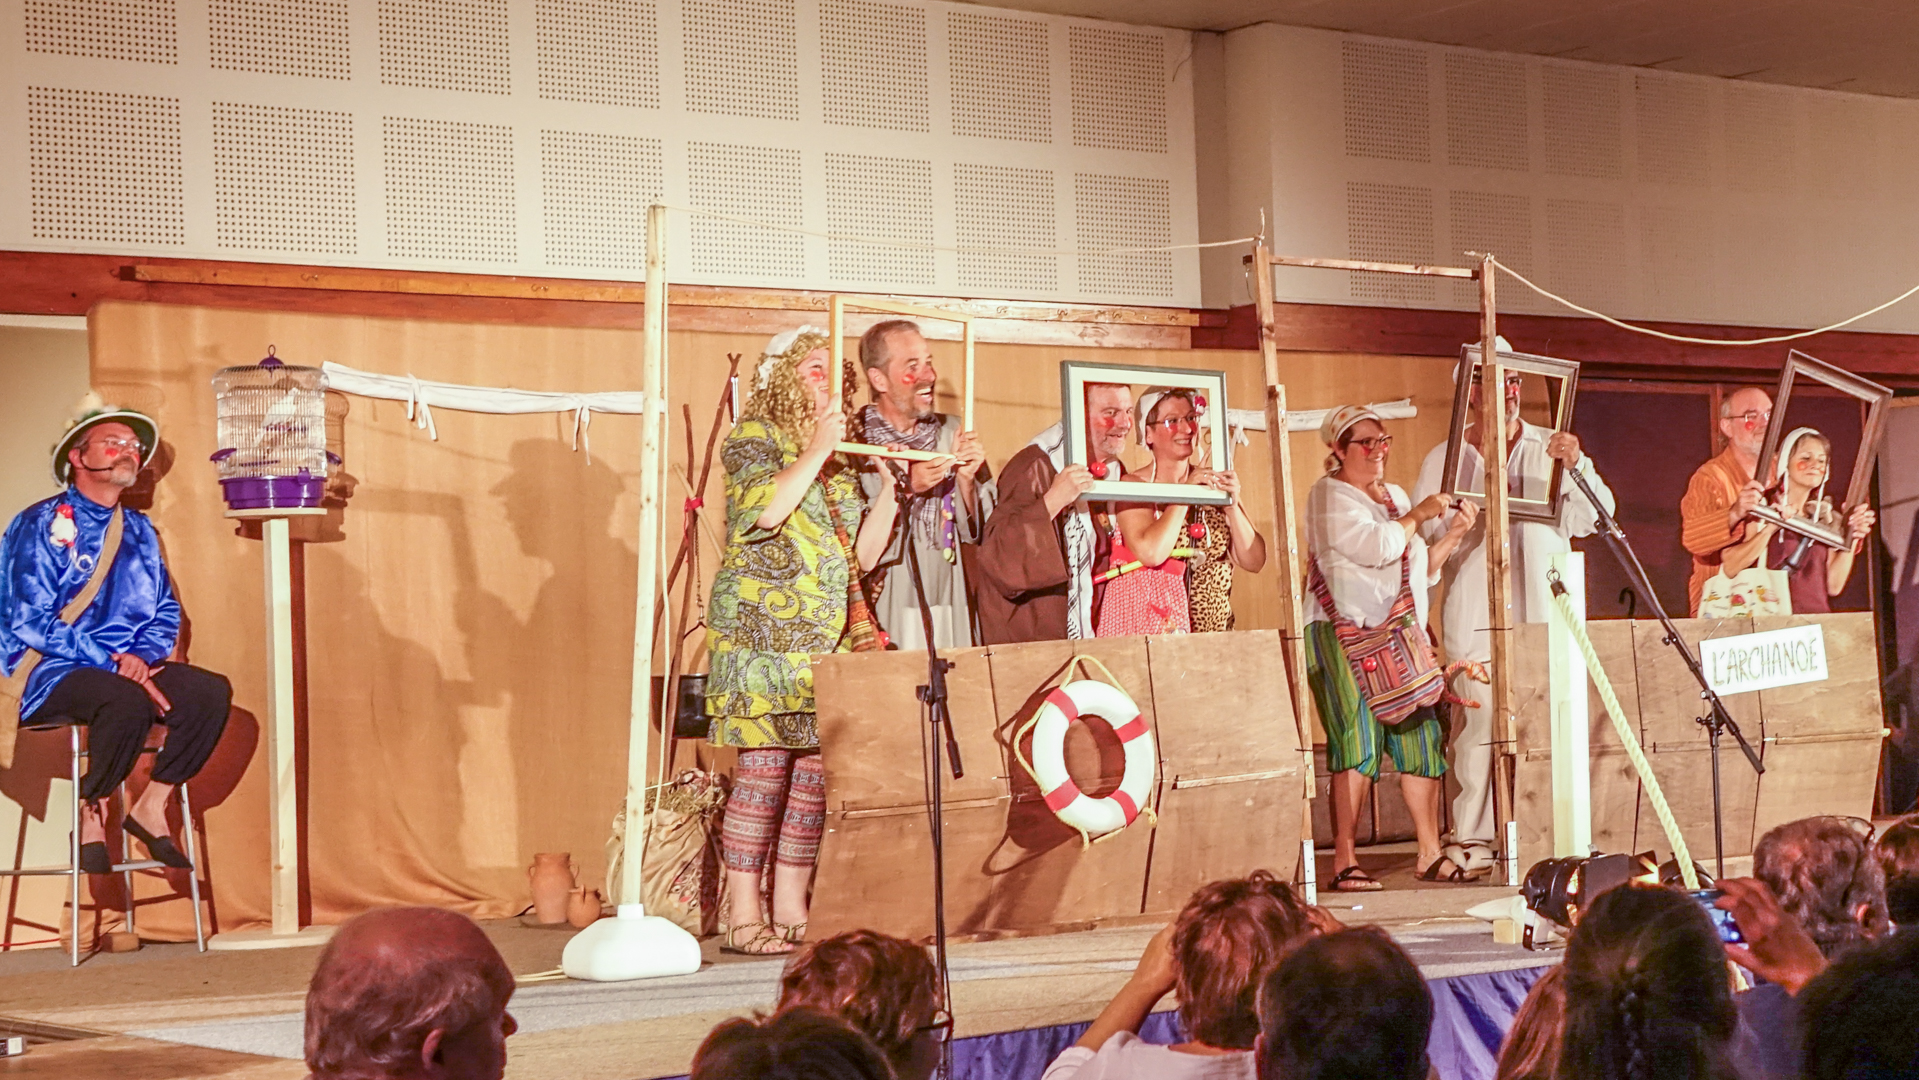 Festival de théâtre religieux burlesque à Poligny. La croisière s'amuse sur l'arche de Noé.  (photo Maurice Page) 